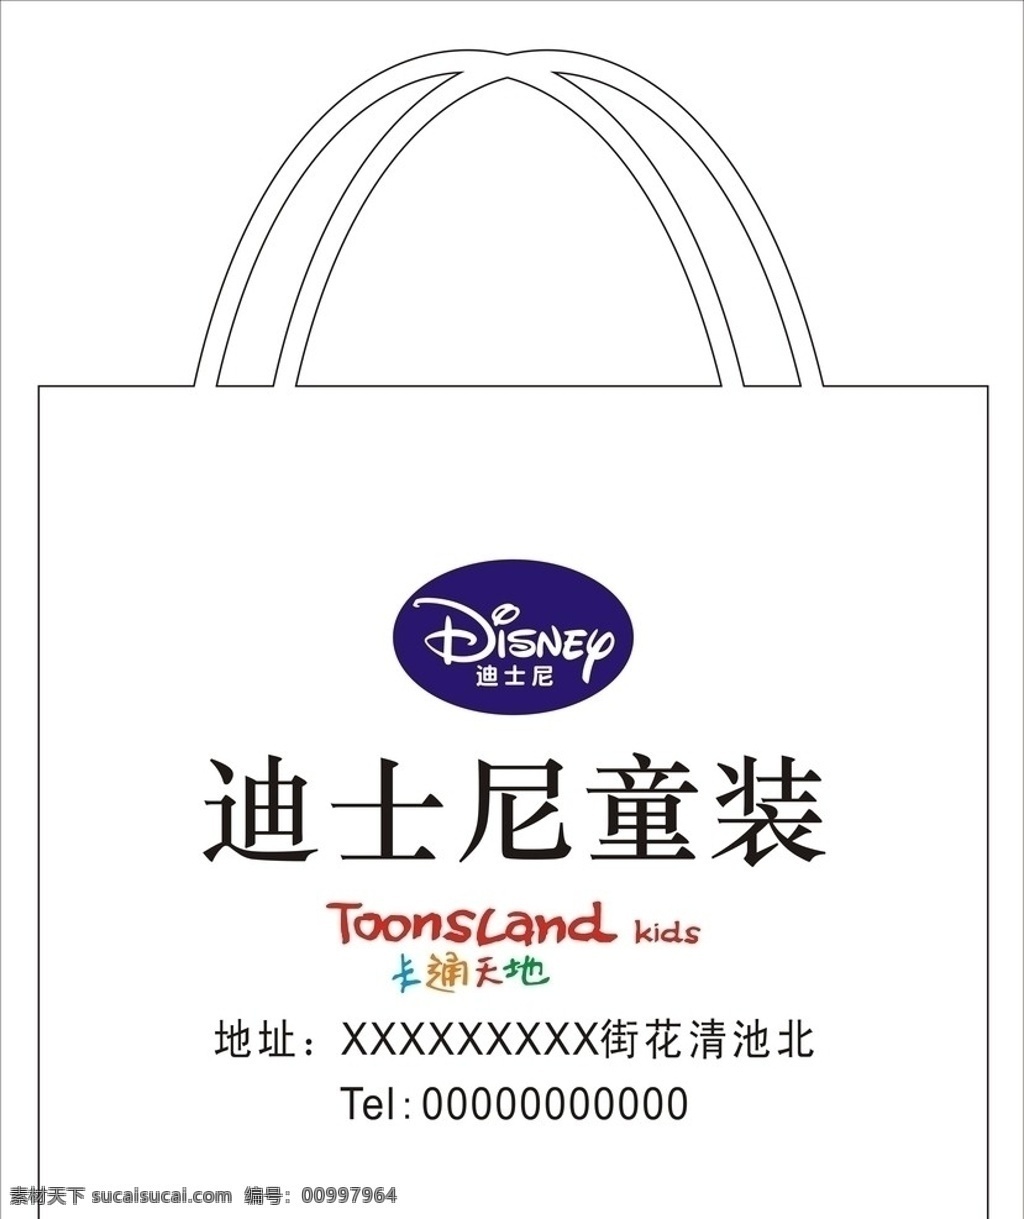 迪士尼 卡通天地 迪士尼标志 卡通 天地 迪士尼童装 迪士尼兜 迪士尼包装 包装设计 矢量